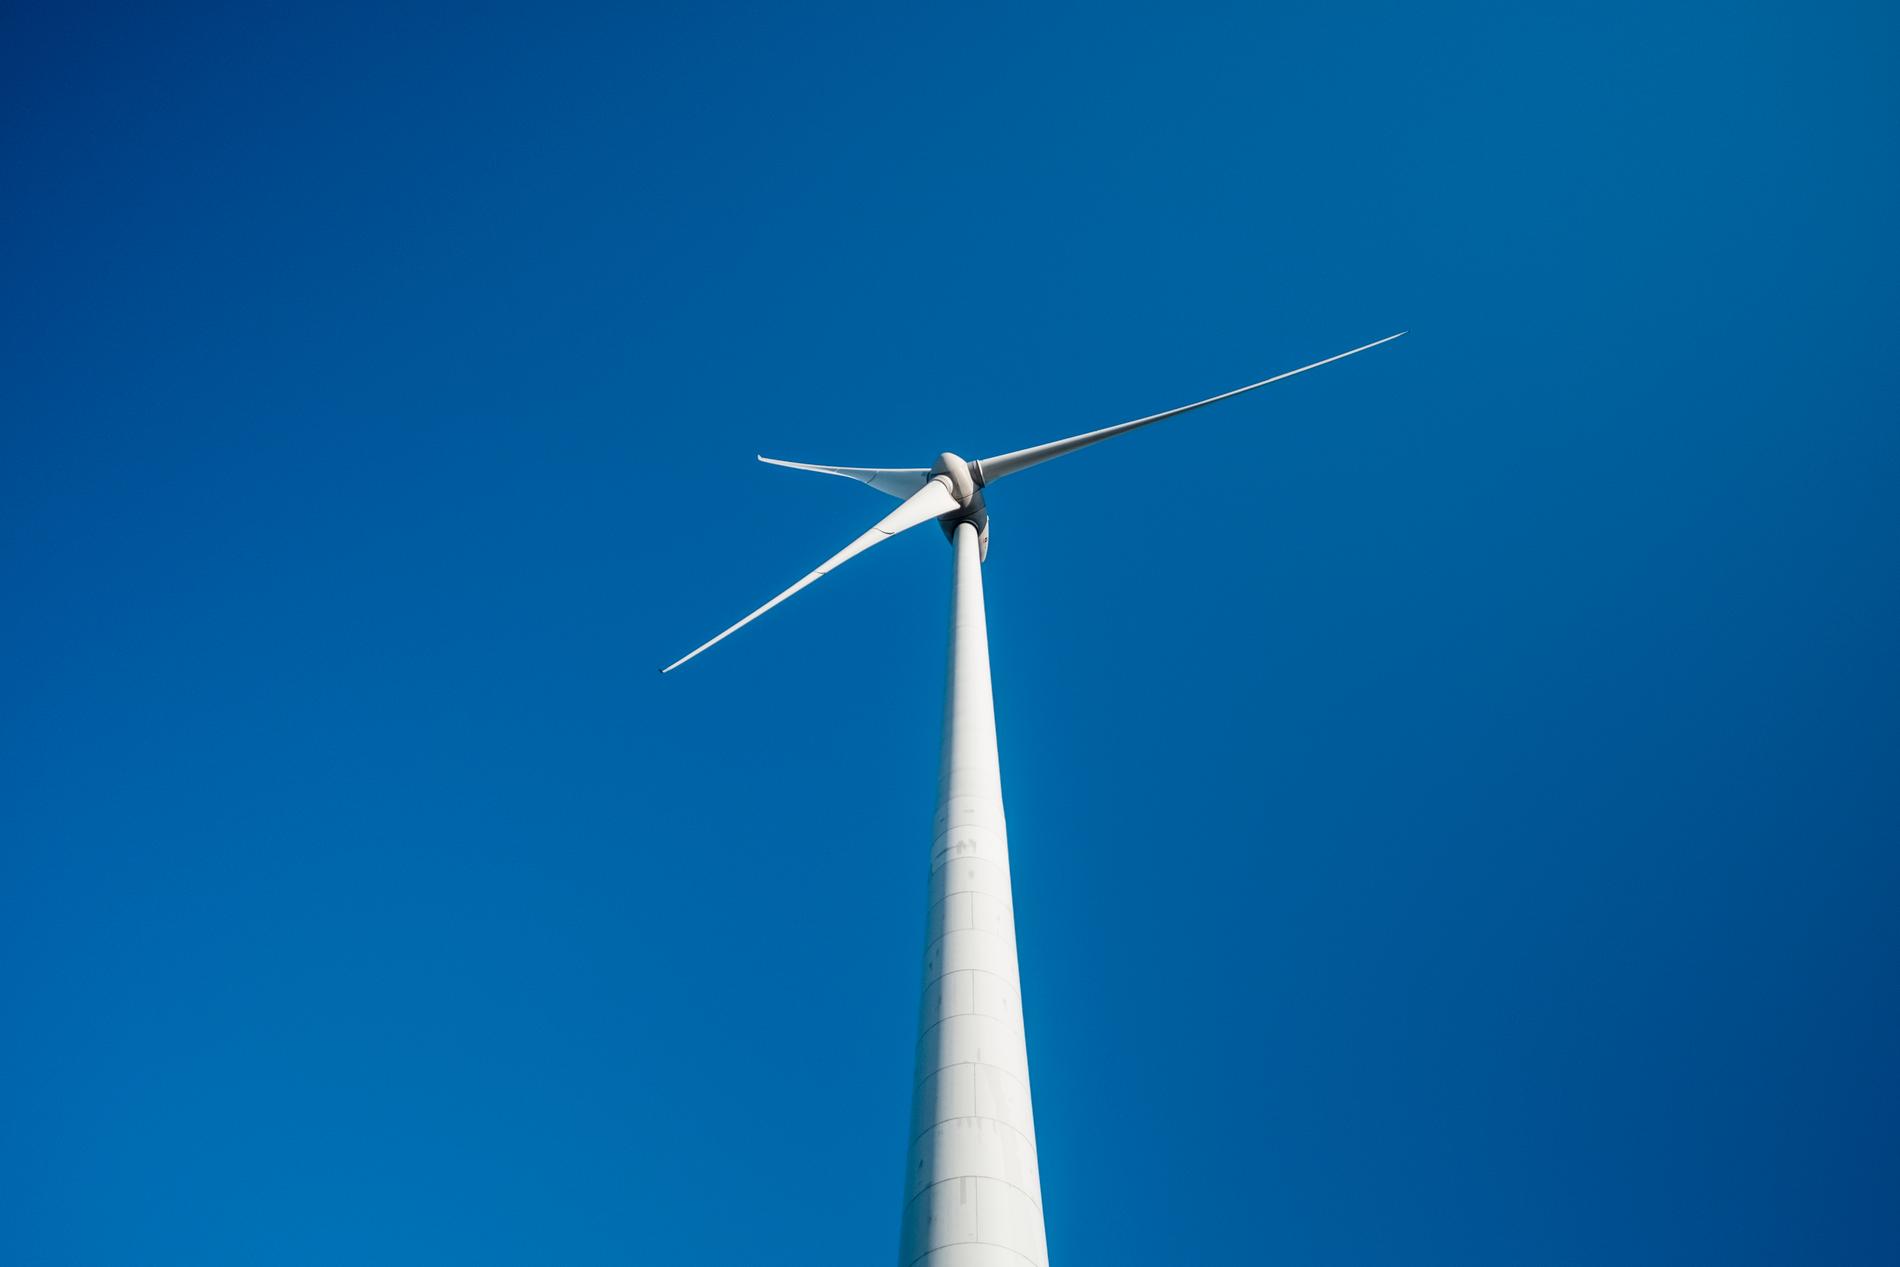 Ökade vindhastigheter i världen ökar förutsättningarna för vindkraft.